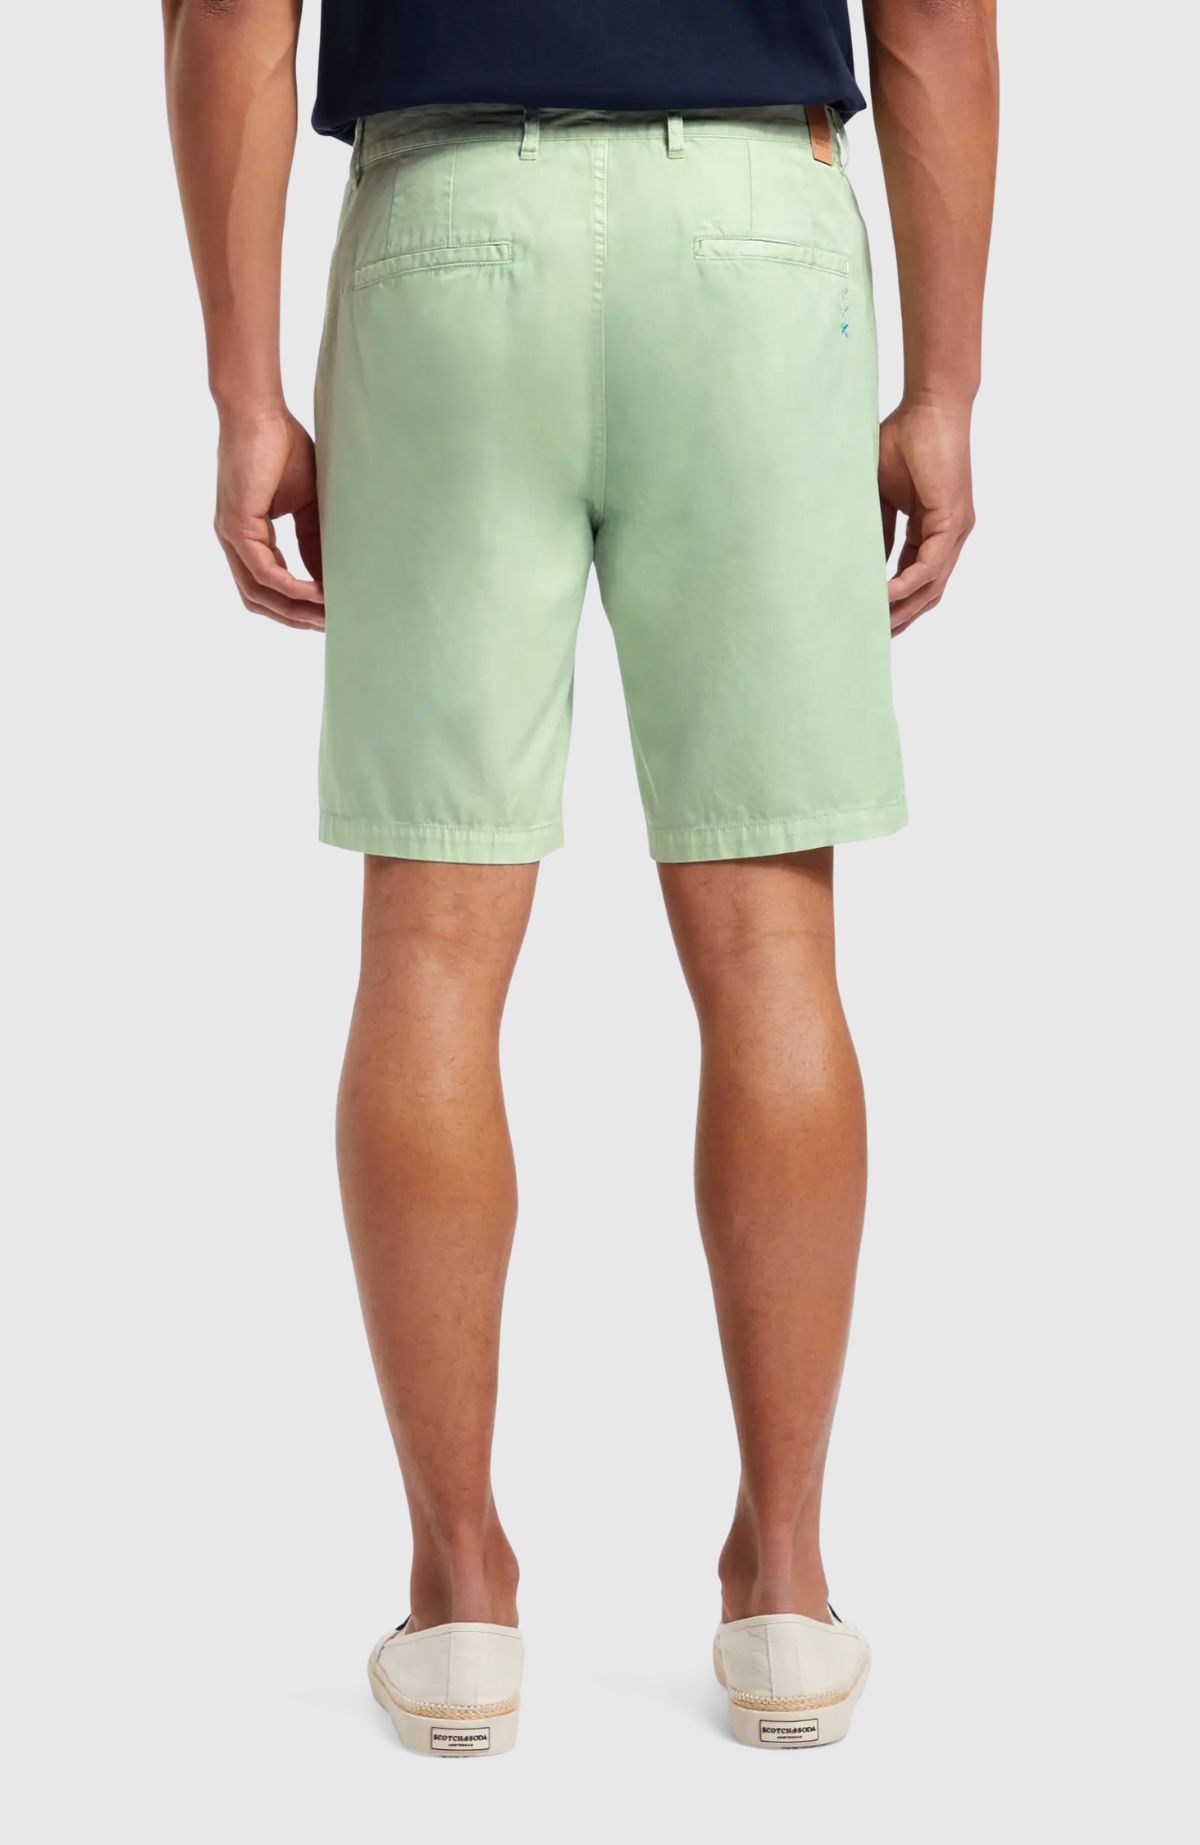 Stuart – Cotton-Blend Twill Shorts